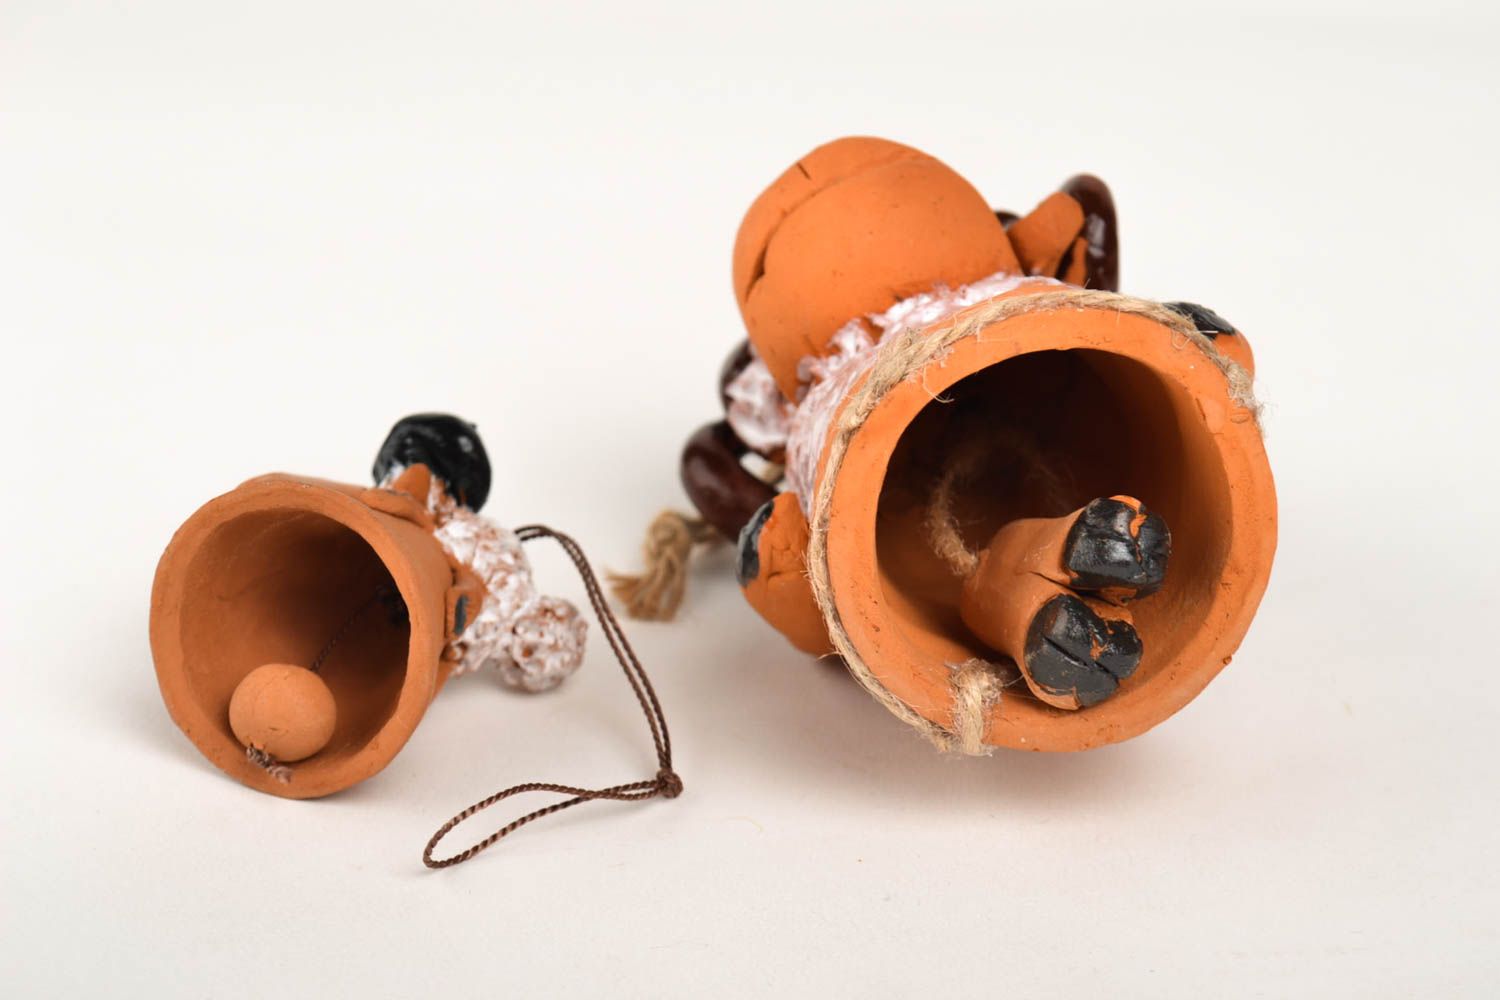 Handmade ceramic bells 2 designer clay souvenirs interior decor ideas photo 2